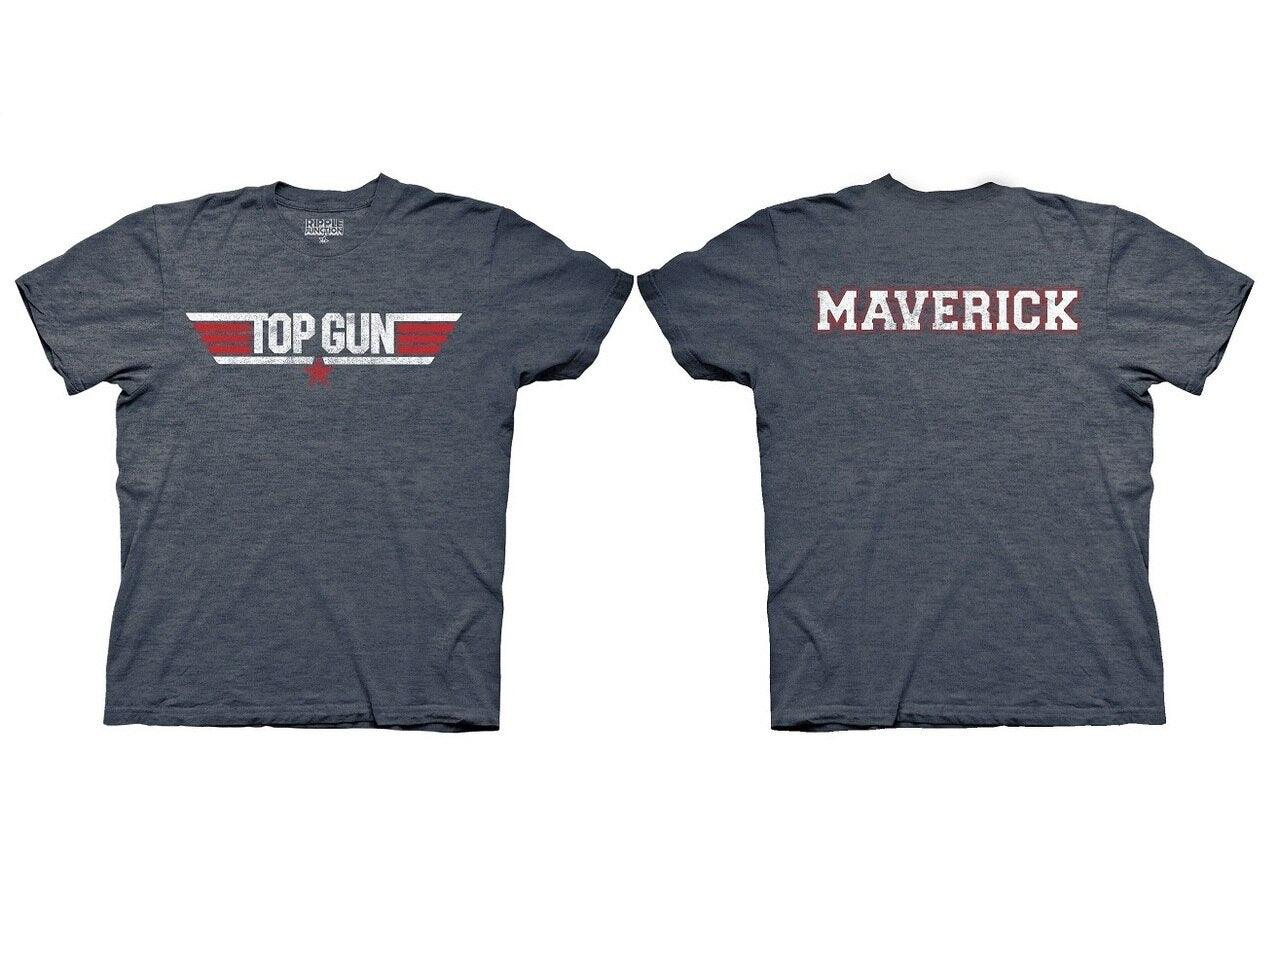 Top Gun Logo and Maverick Name T-Shirt-tvso